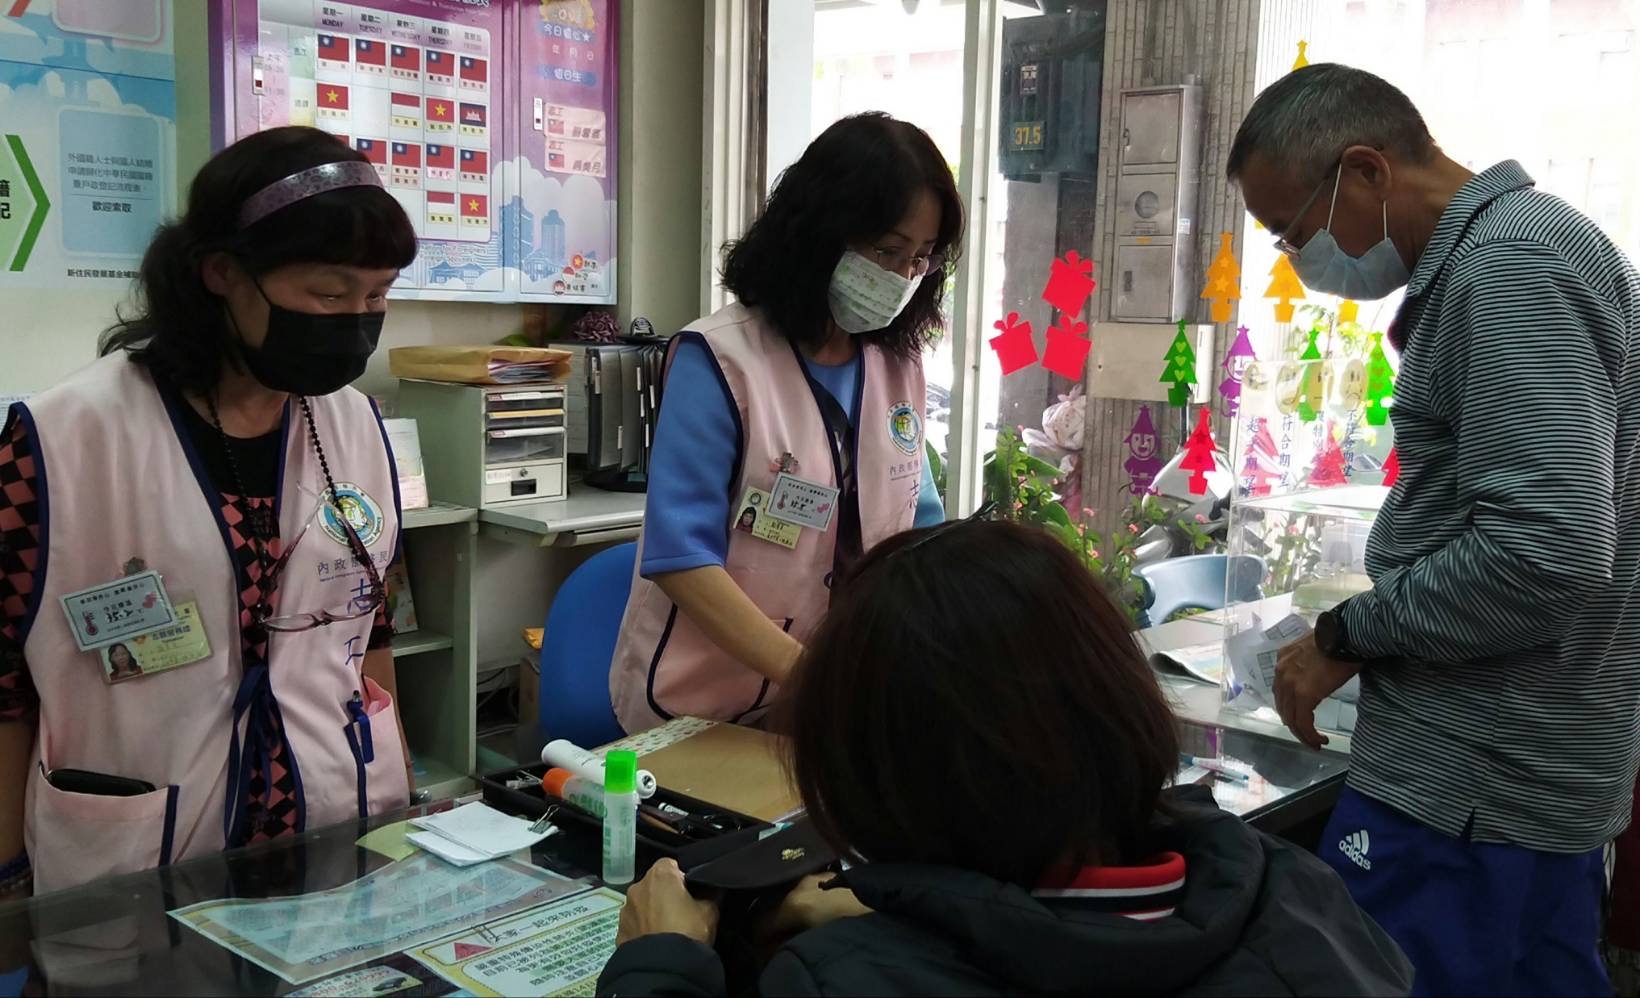 Nhân viên phục vụ tại quầy/ nhân viên tình nguyện/ phiên dịch đều đeo「Thẻ thân nhiệt」(ảnh Bộ Nội chính)